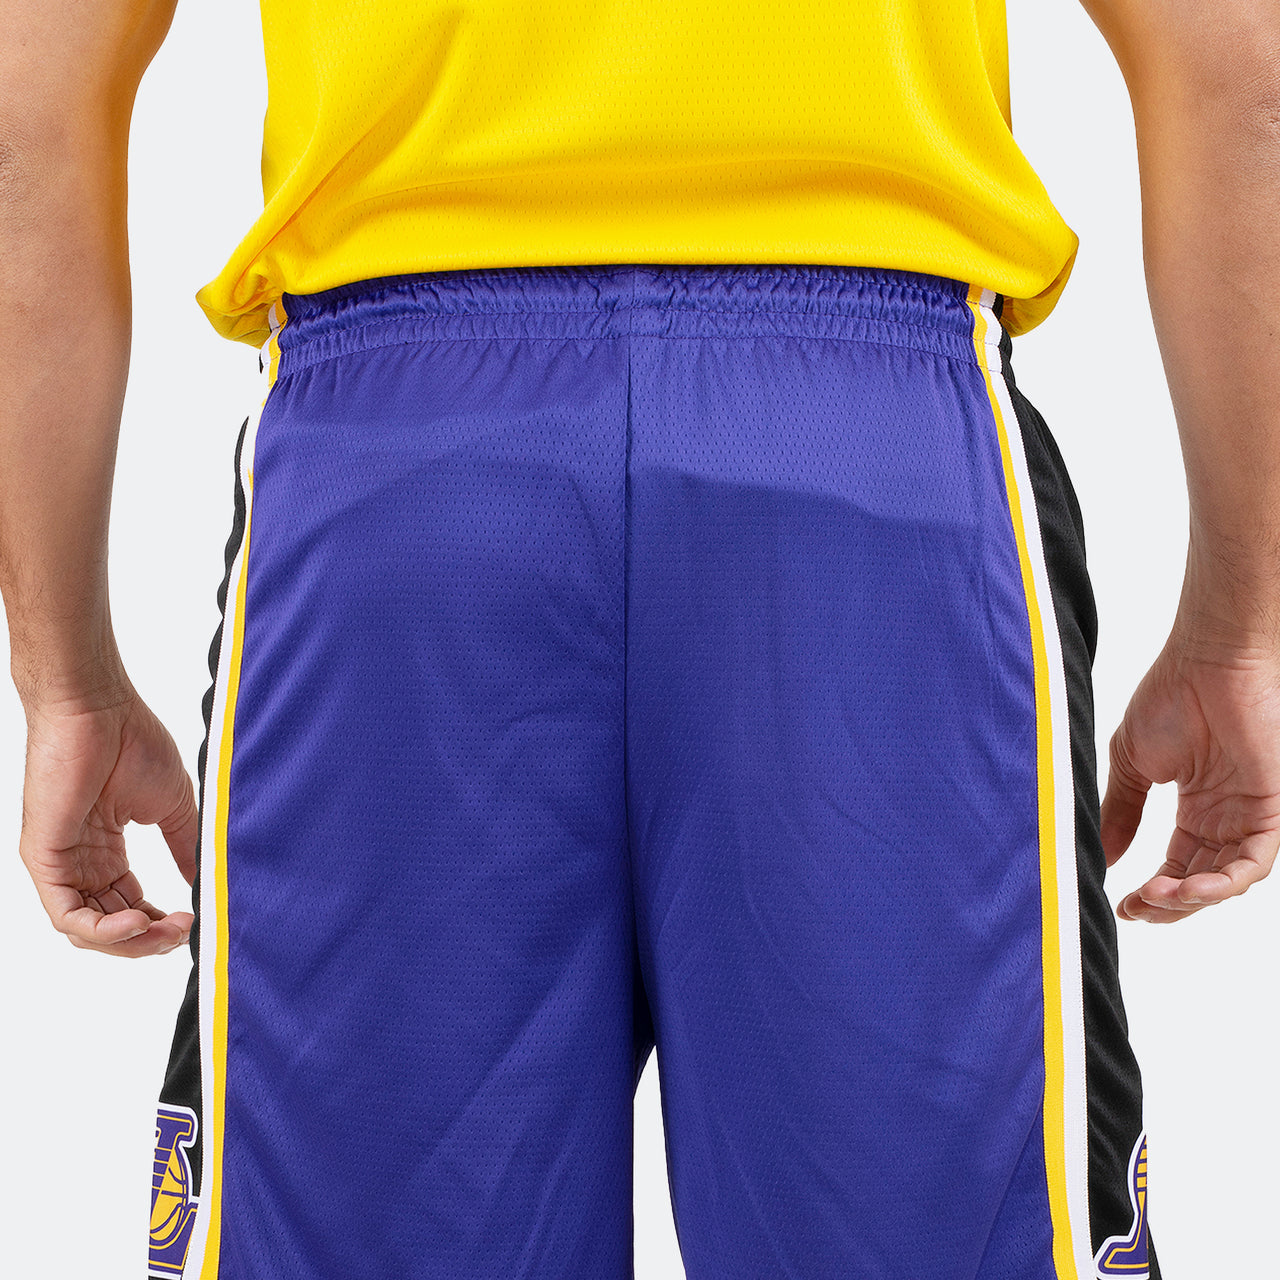 Short violet des Lakers de Los Angeles pour hommes